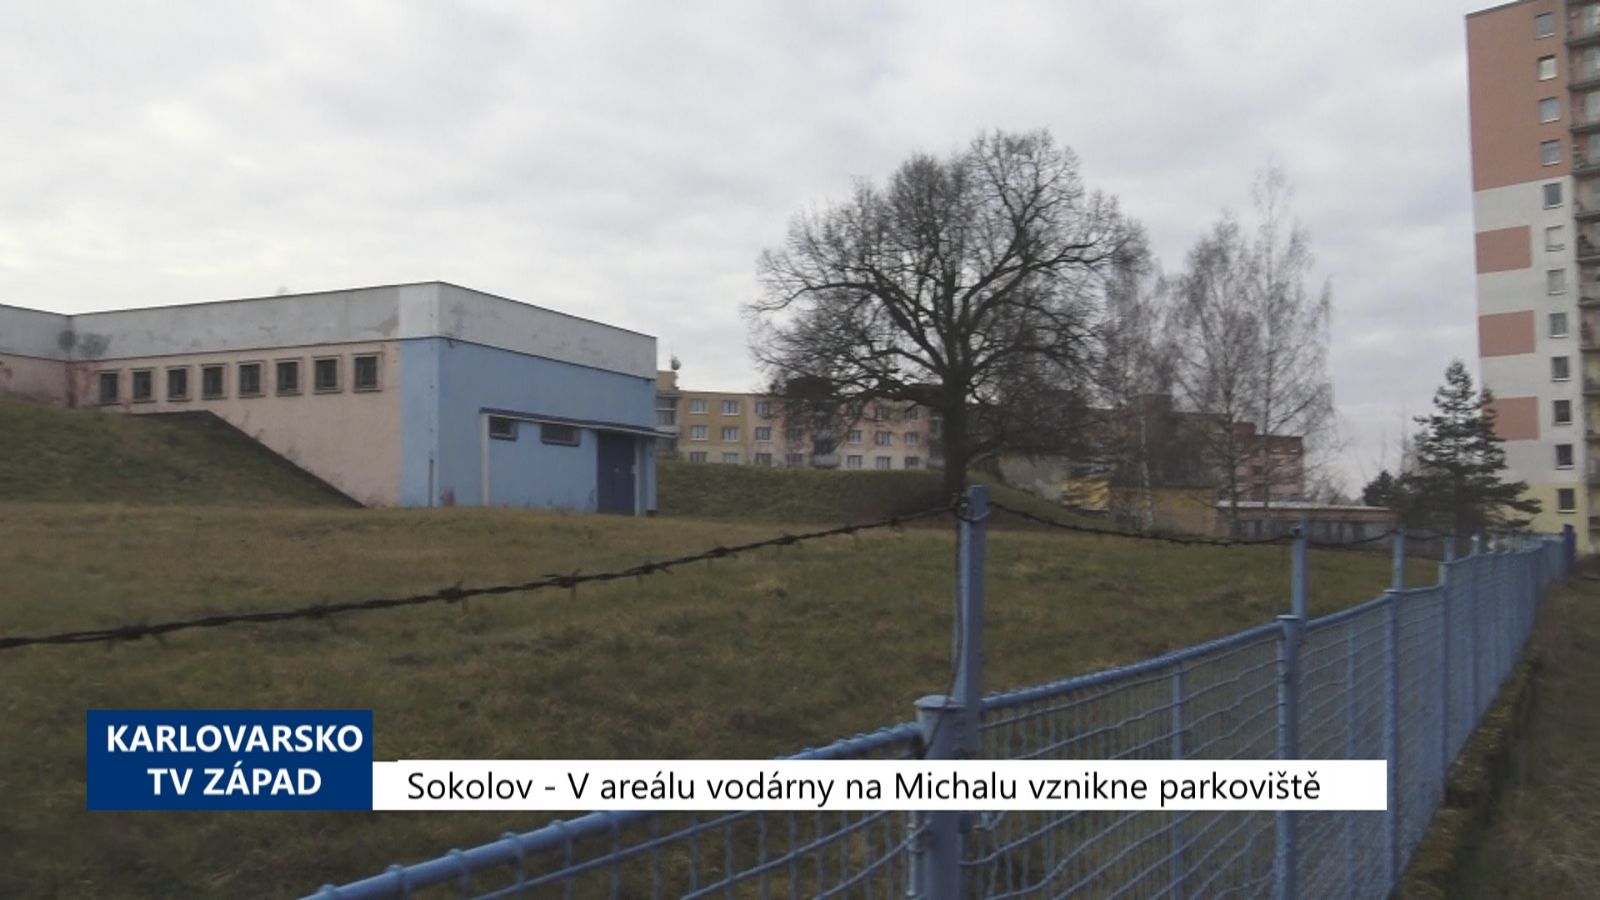 Sokolov: V areálu vodárny na Michalu vznikne parkoviště (TV Západ)